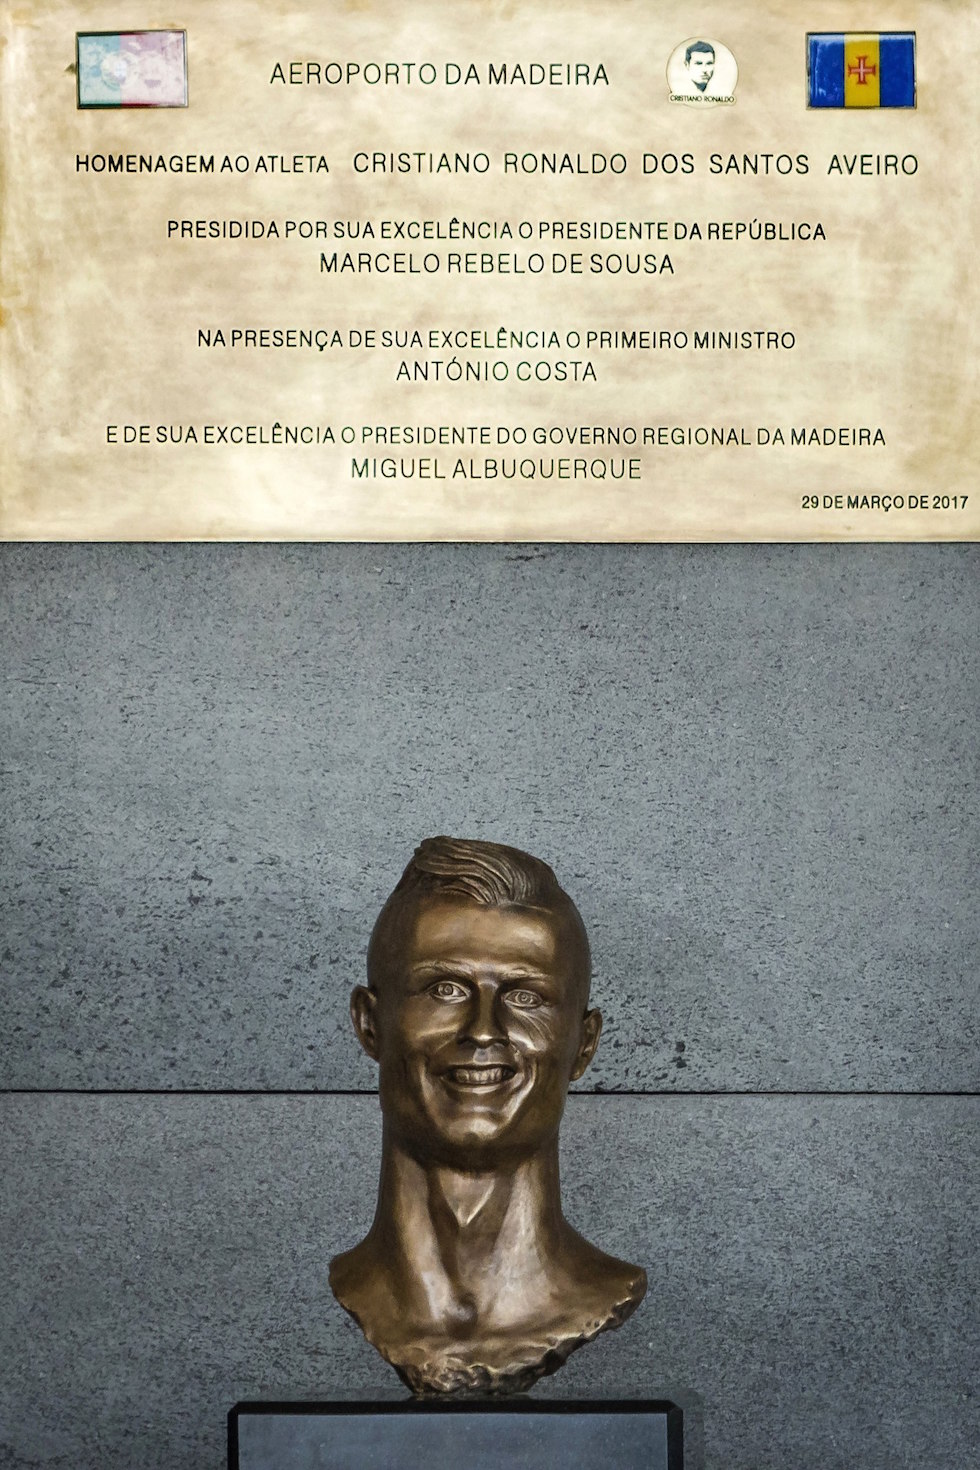 El busto del futbolista portugués Cristiano Ronaldo permanece bajo una placa conmemorativa durante un evento por el nombramiento del aeropuerto de Madeira en Portugal.